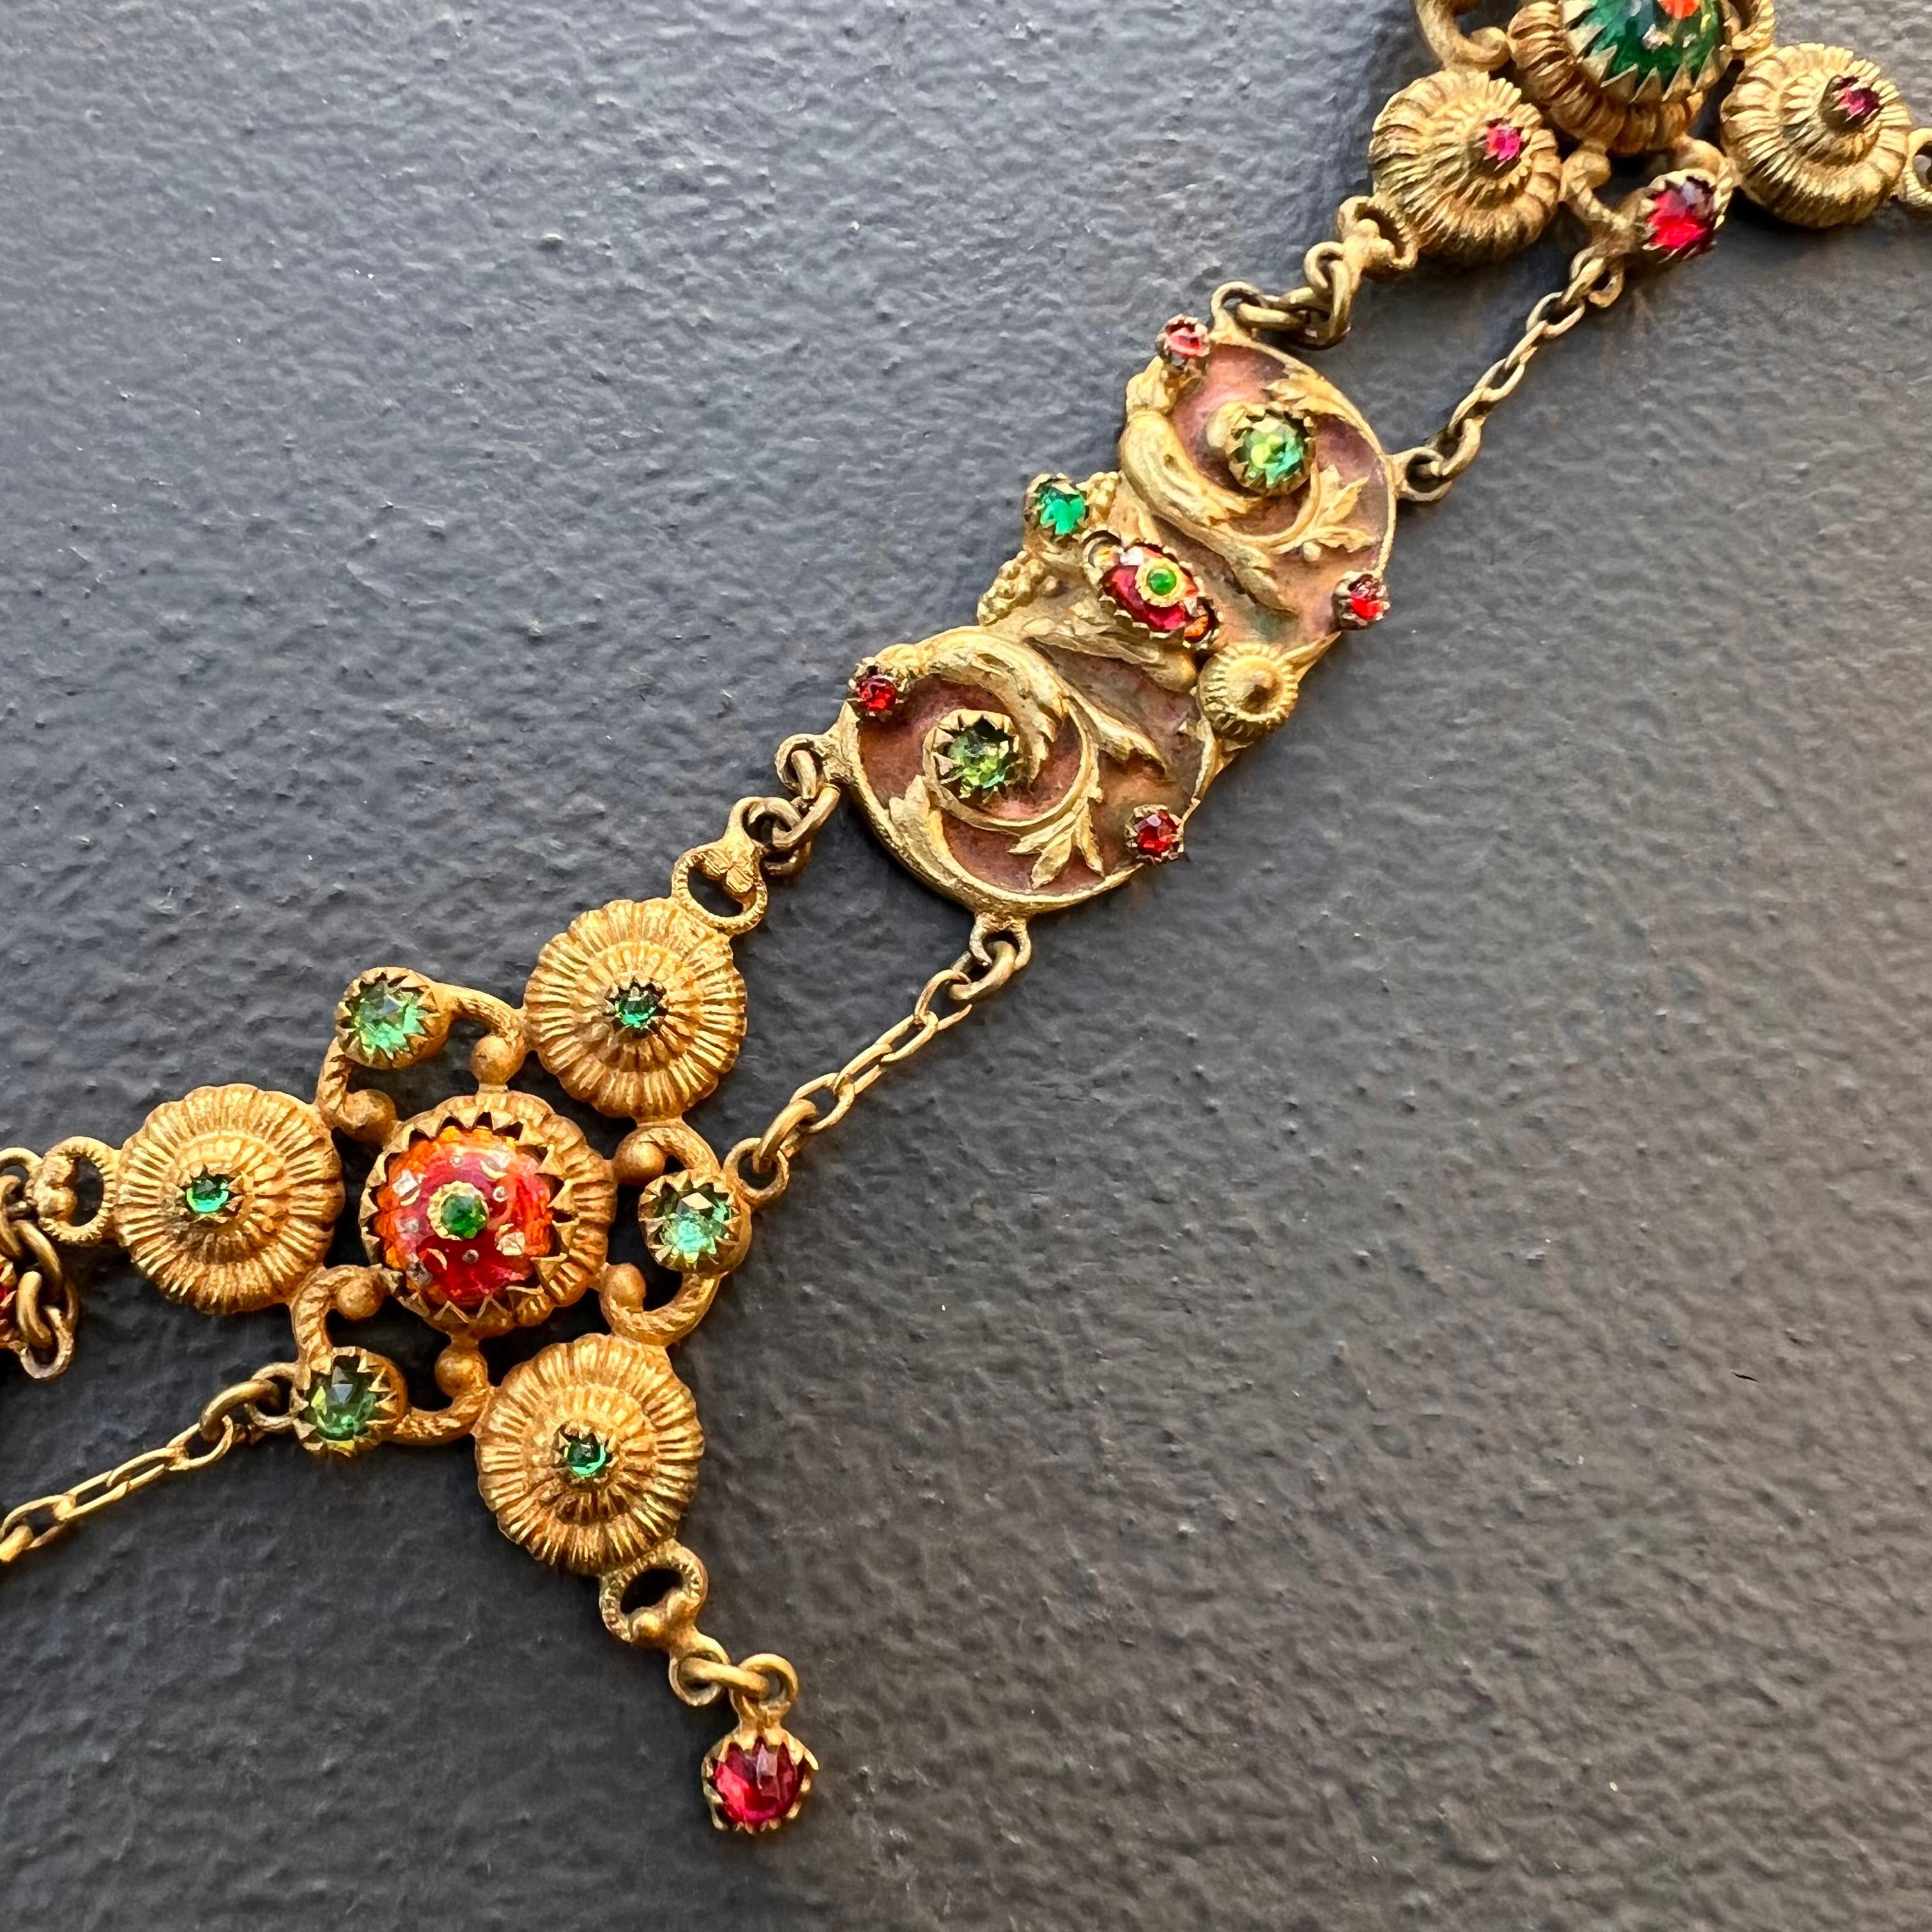 Antique Art Nouveau French Bresse Bressan Festoon Necklace For Sale 2